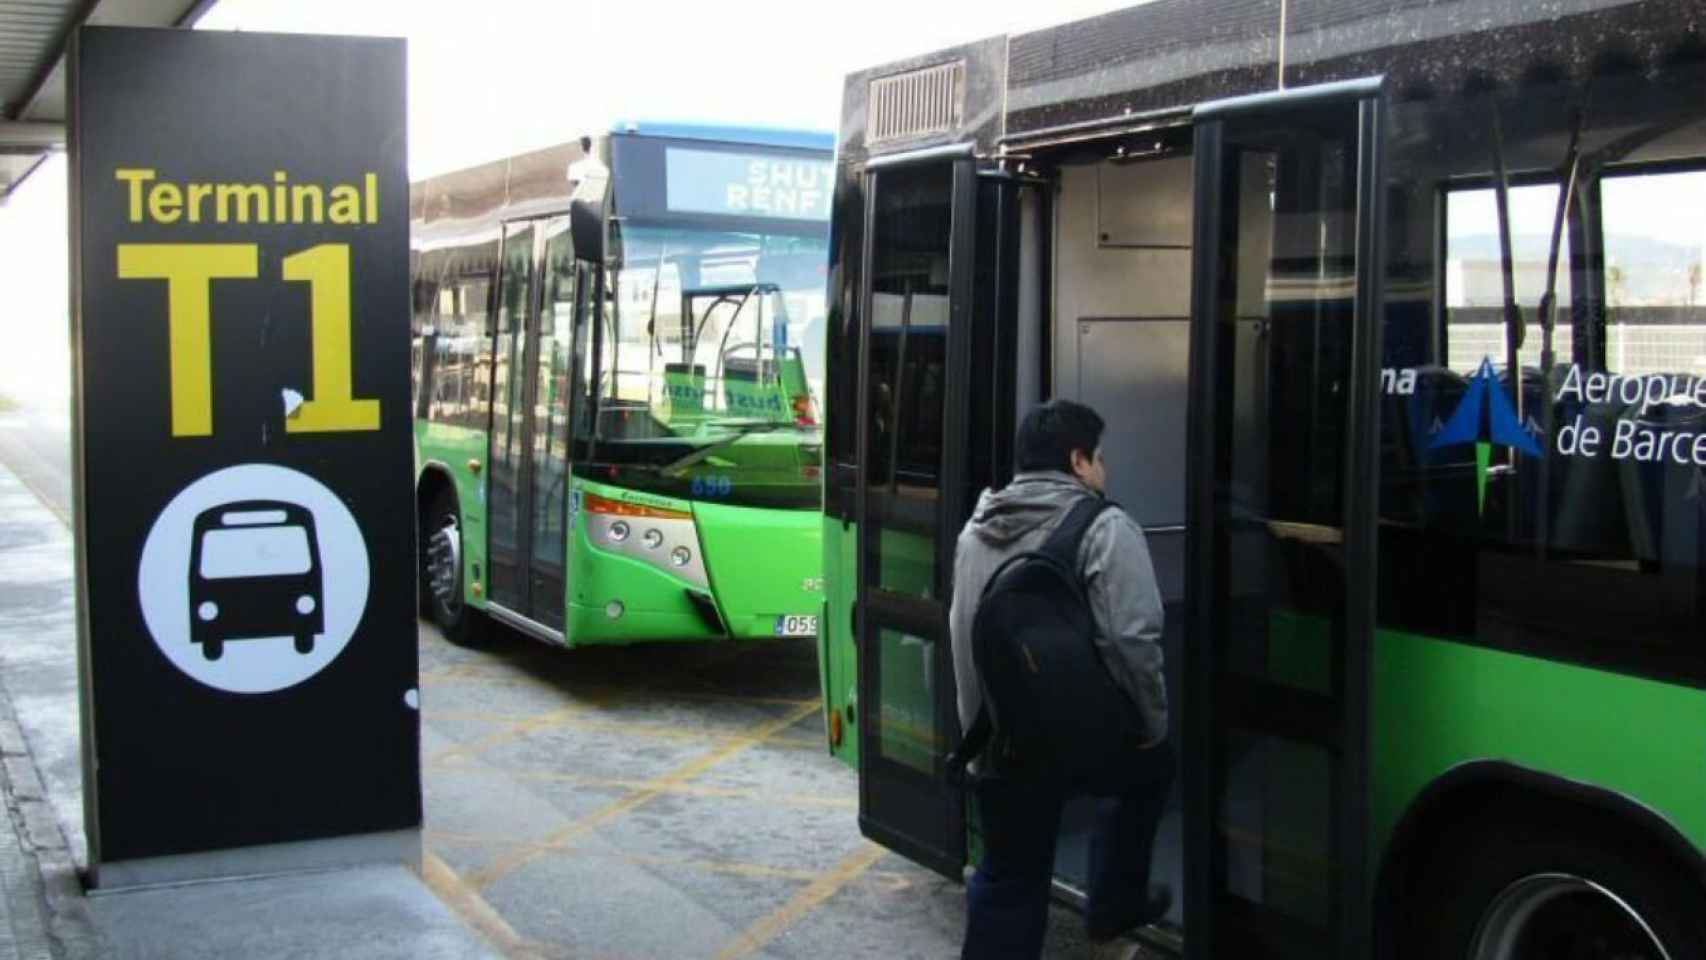 Autobuses lanzadera entre las terminales del aeropuerto barcelonés de El Prat